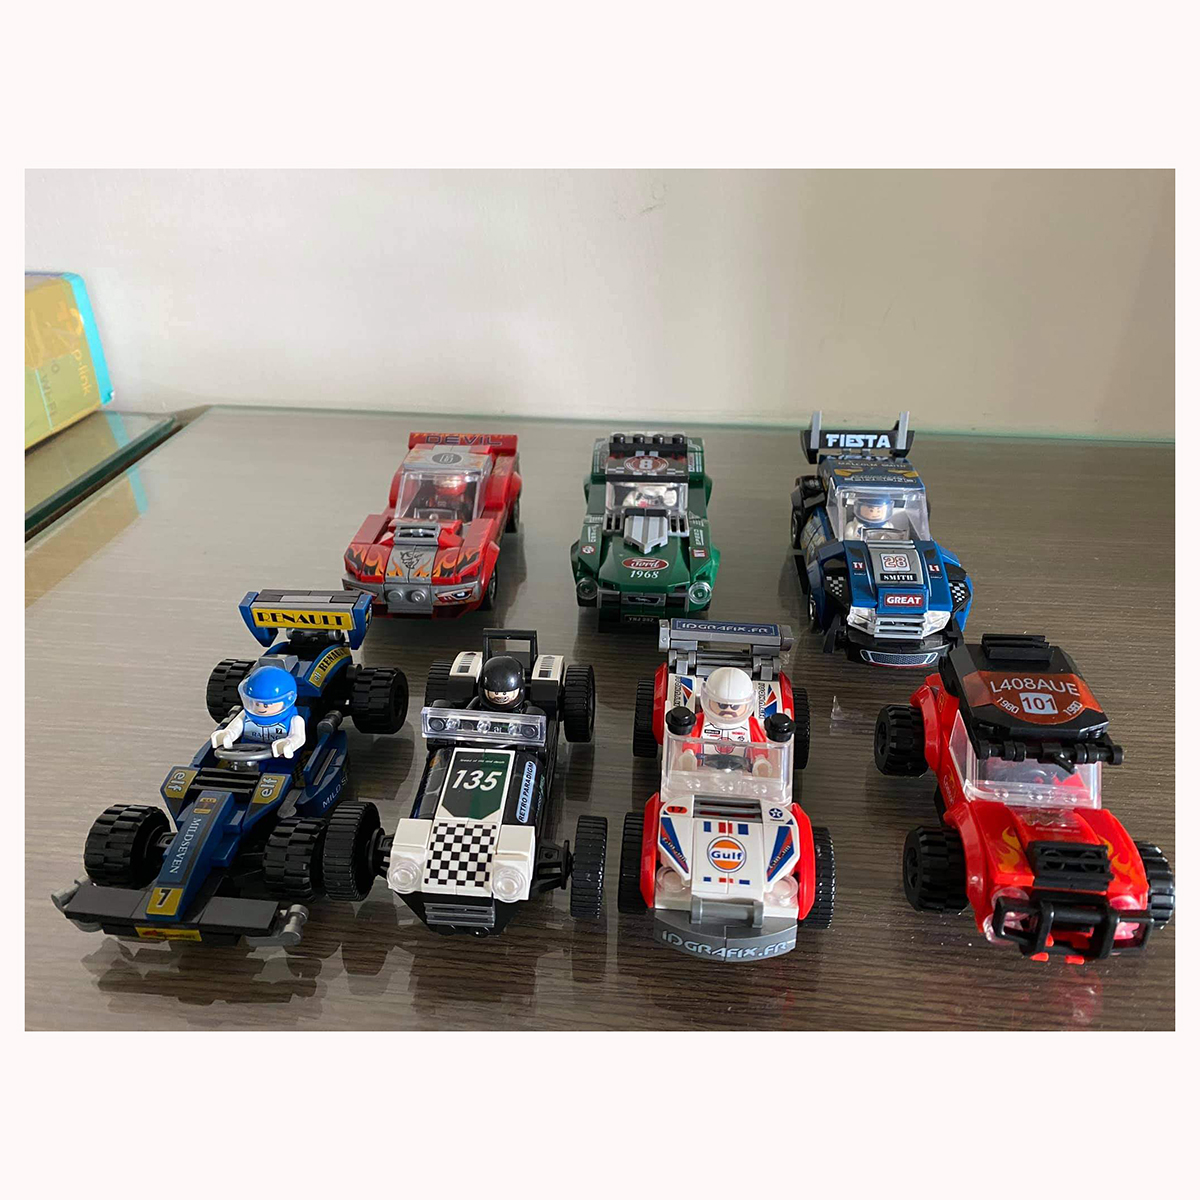 Bộ đồ chơi xếp hình xe đua ô tô KAVY model 31003 và 31005 hơn 160 chi tiết sáng tạo độc đáo